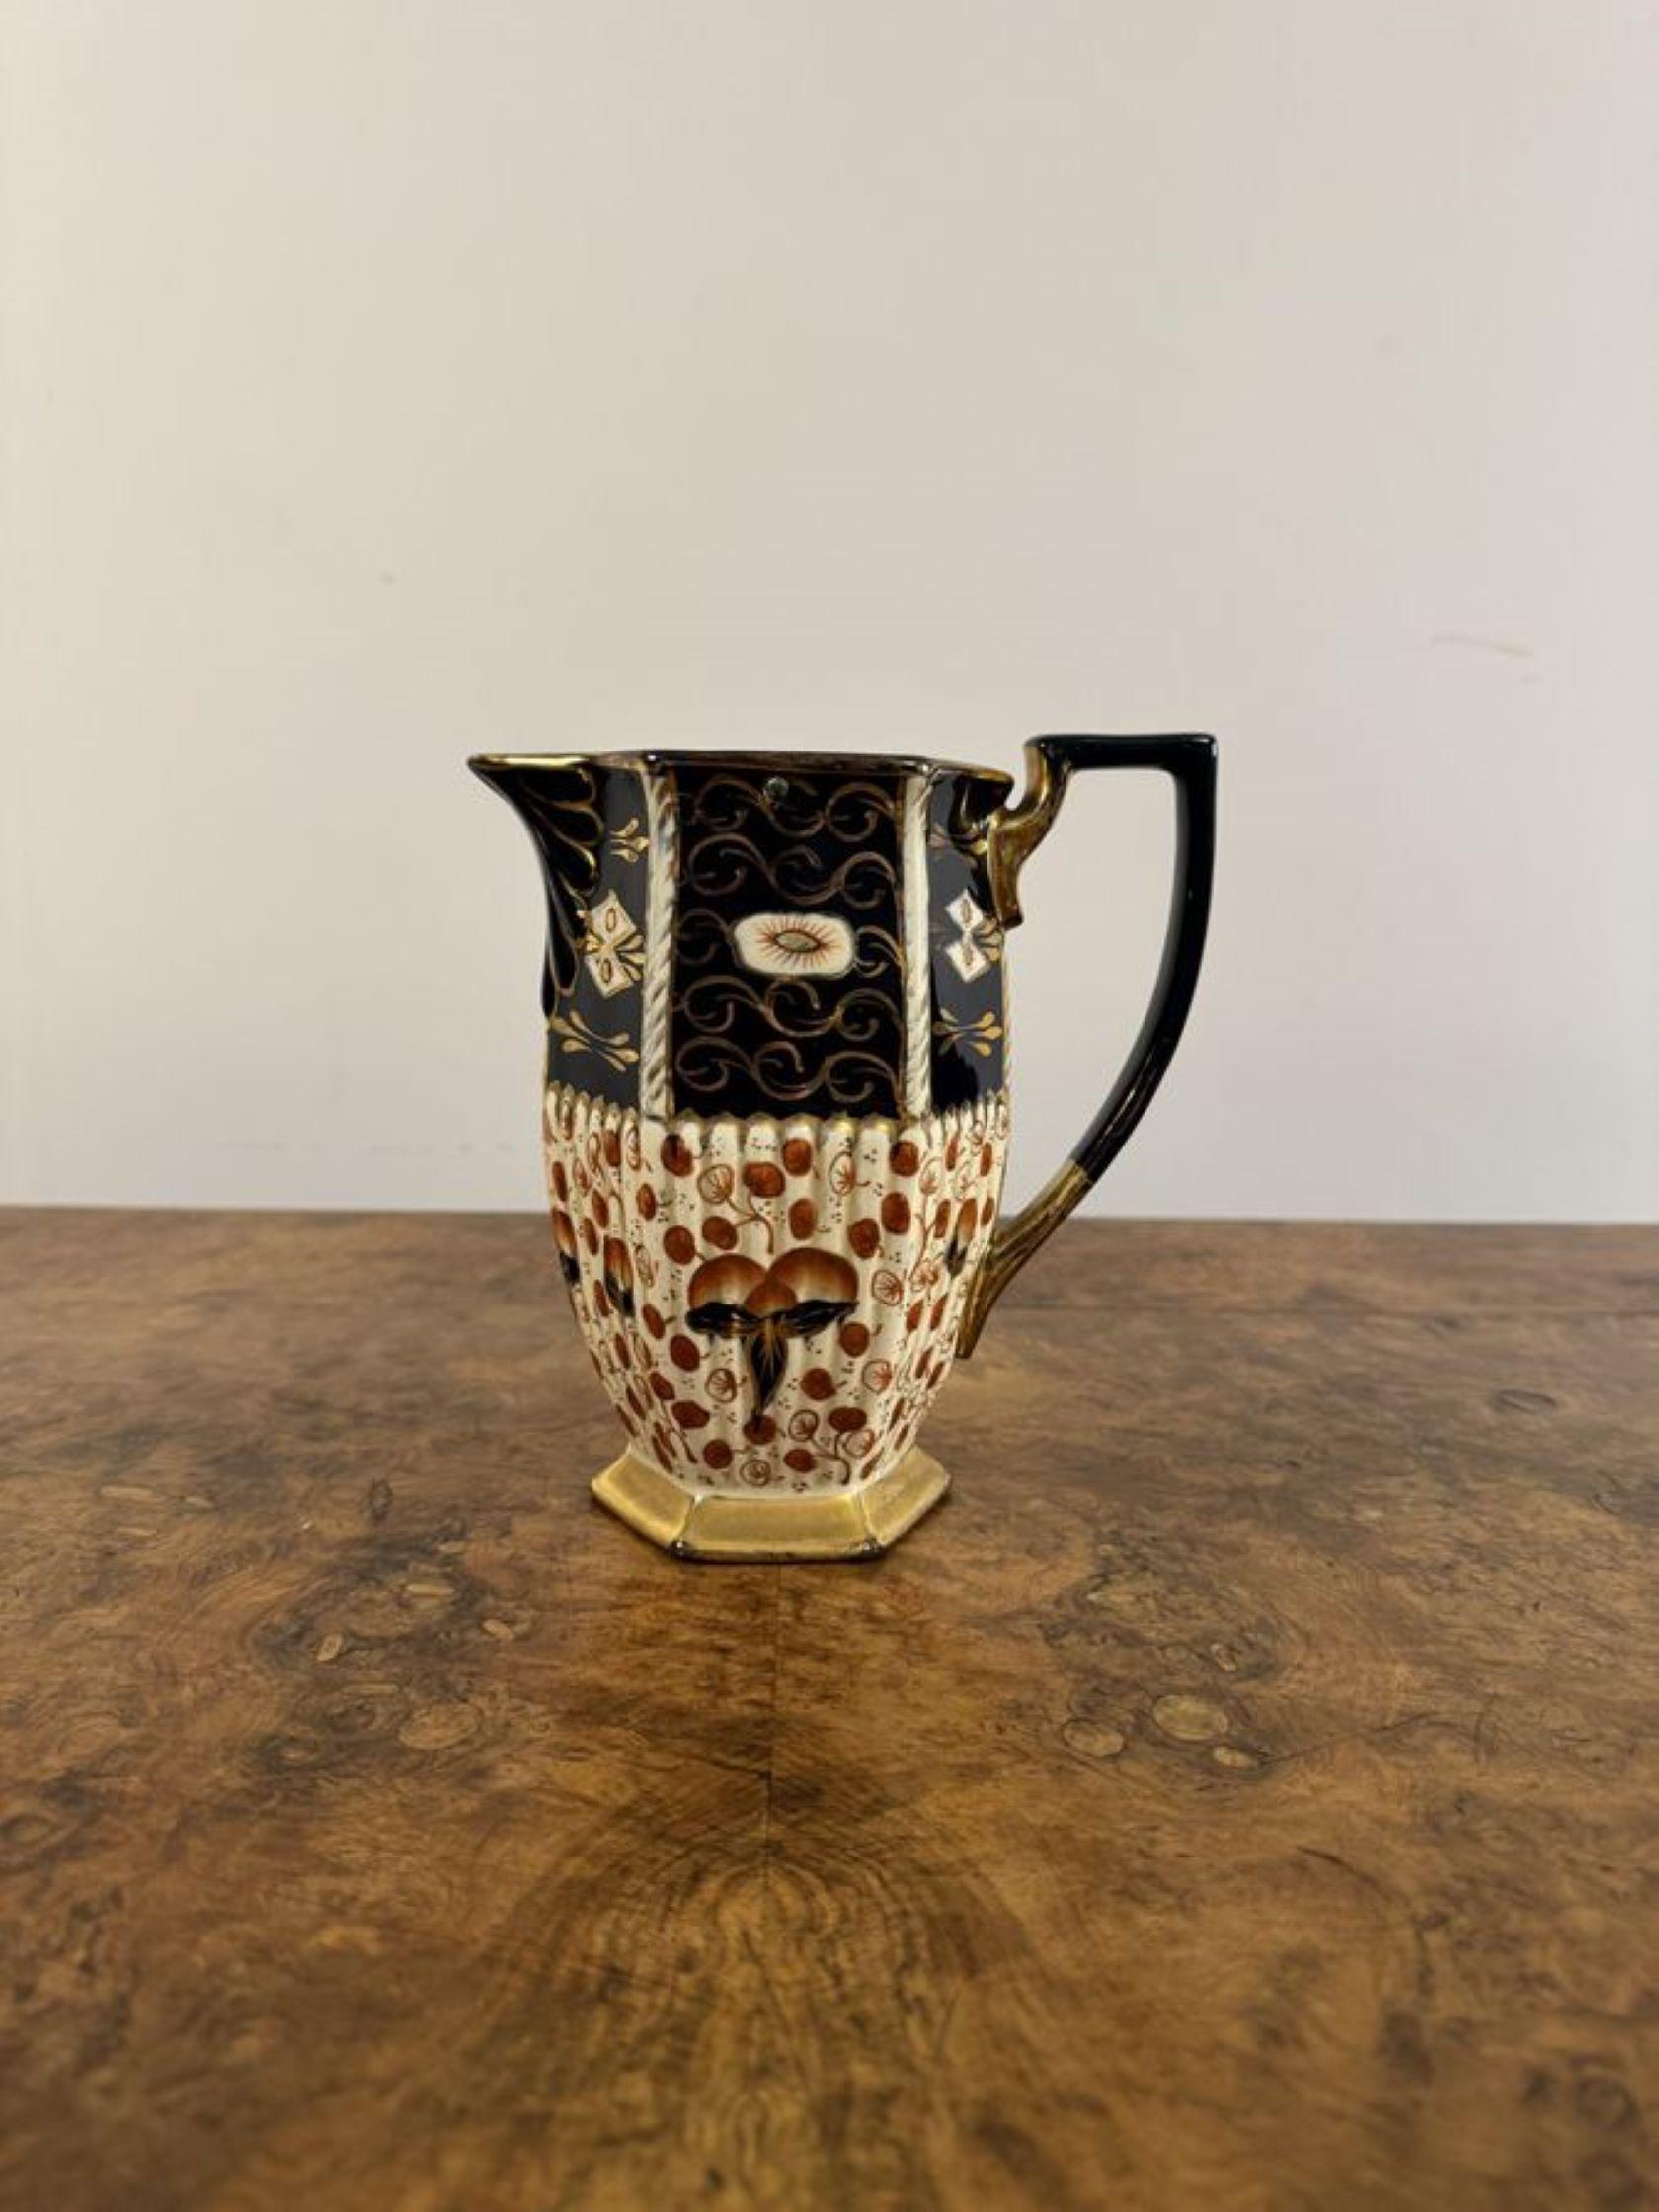 Wunderschönes antikes viktorianisches Royal Davenport Teeservice, bestehend aus einer schönen Teekanne mit dem originalen Ständer, einer Kanne mit heißem Wasser und einer Zuckerdose mit wunderschönem Farbdekor in Blau, Rot, Weiß und Gold.

D. 1880